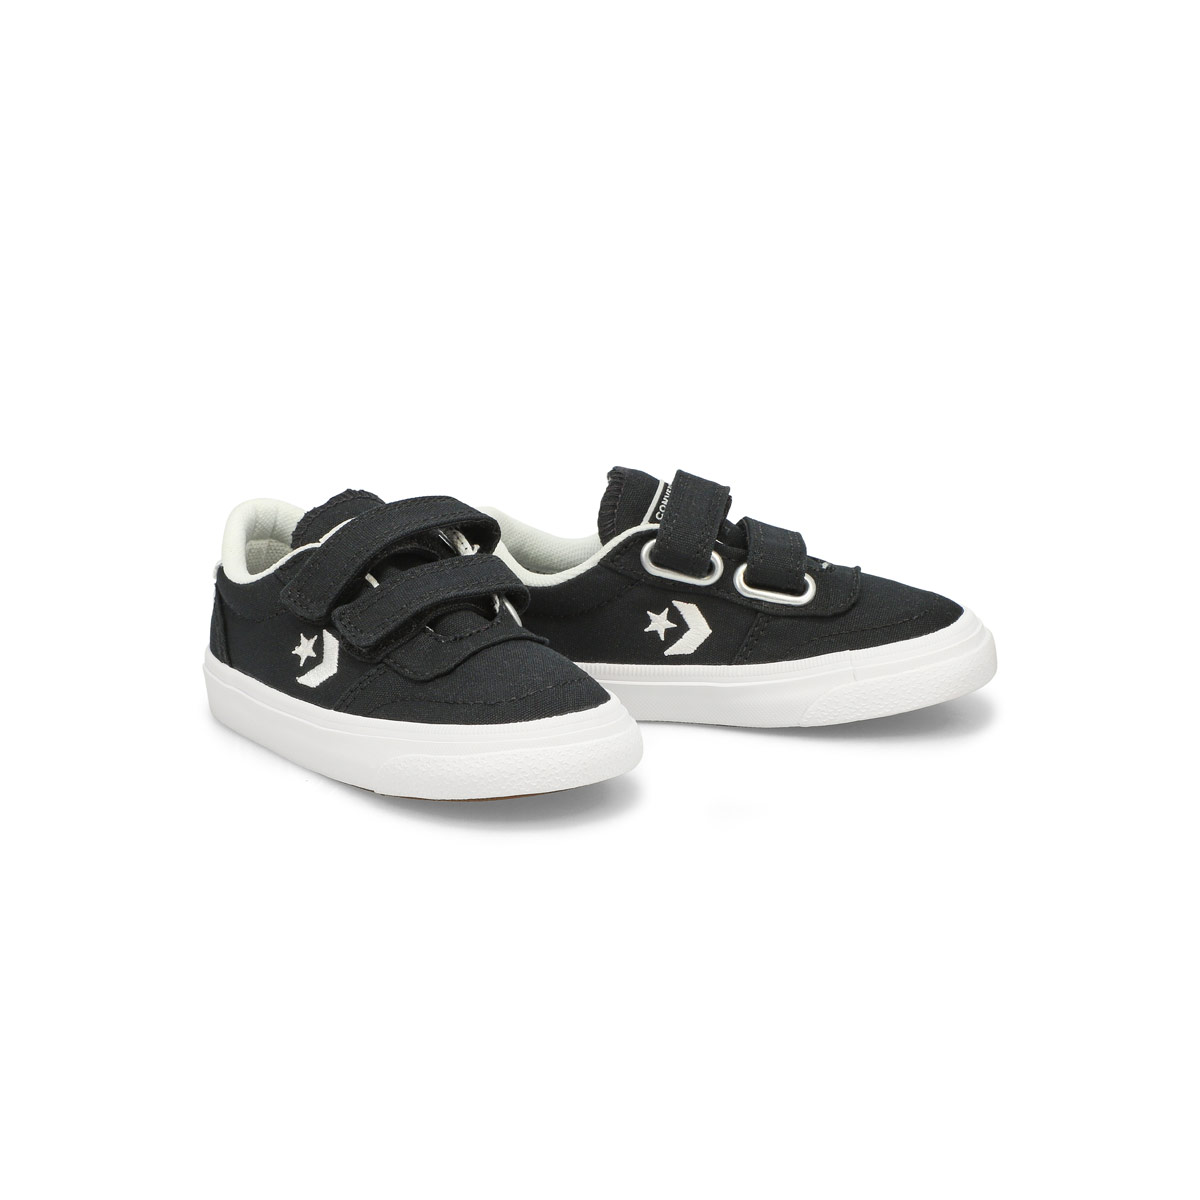 Infants' Boulevard 2V Sneaker - Black/White